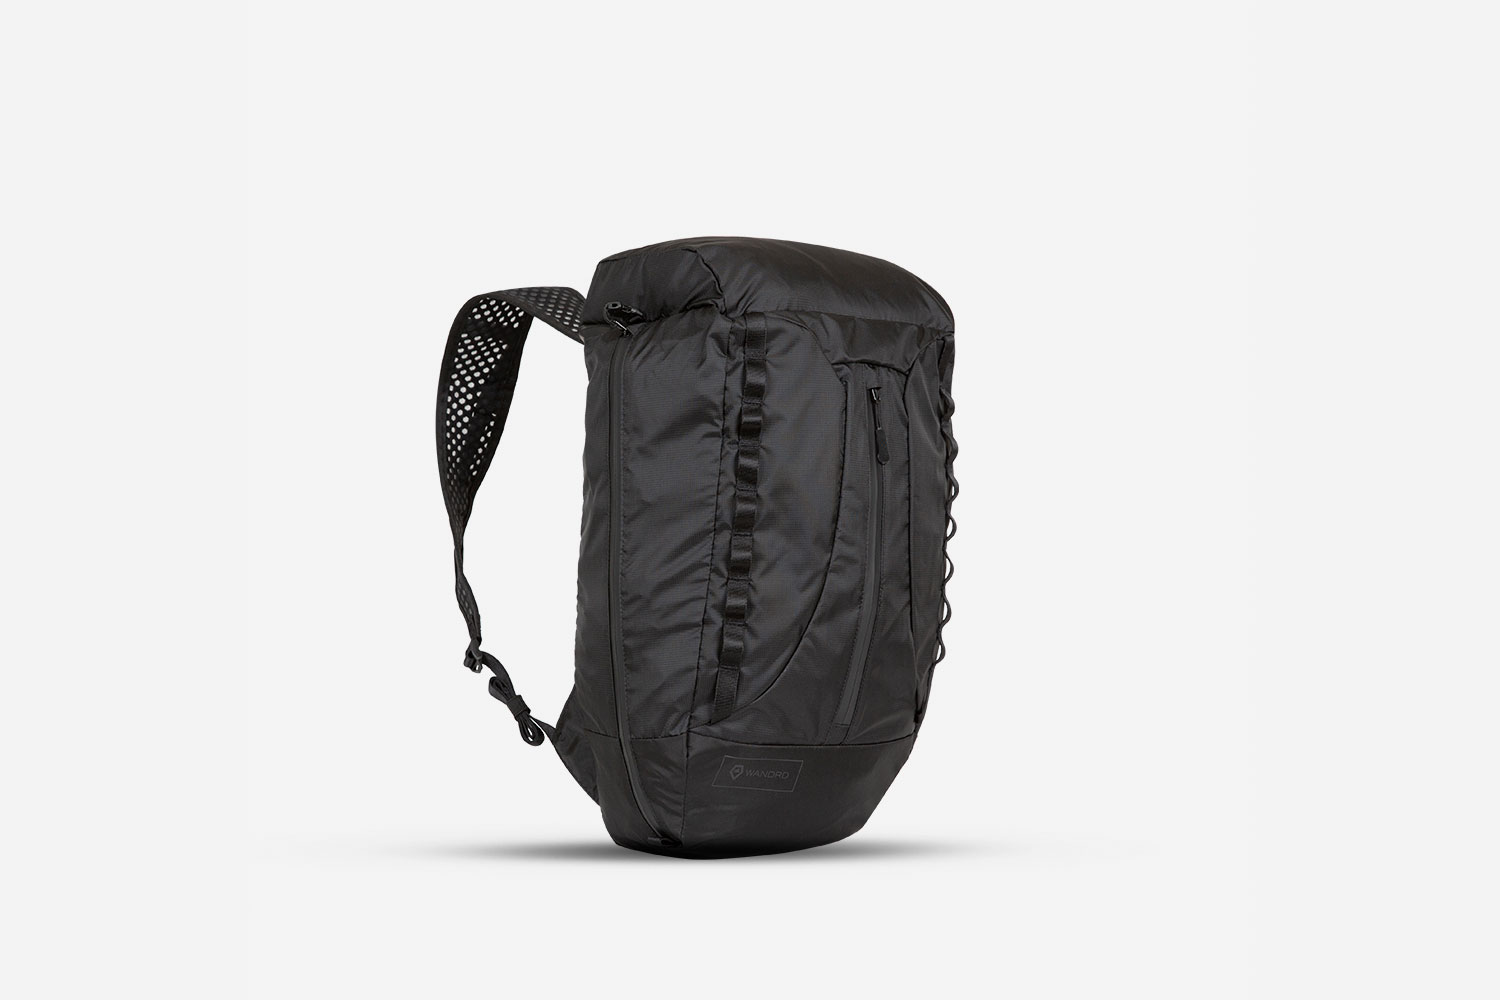 wandrd veer inflatable camera bag kickstarter expanded